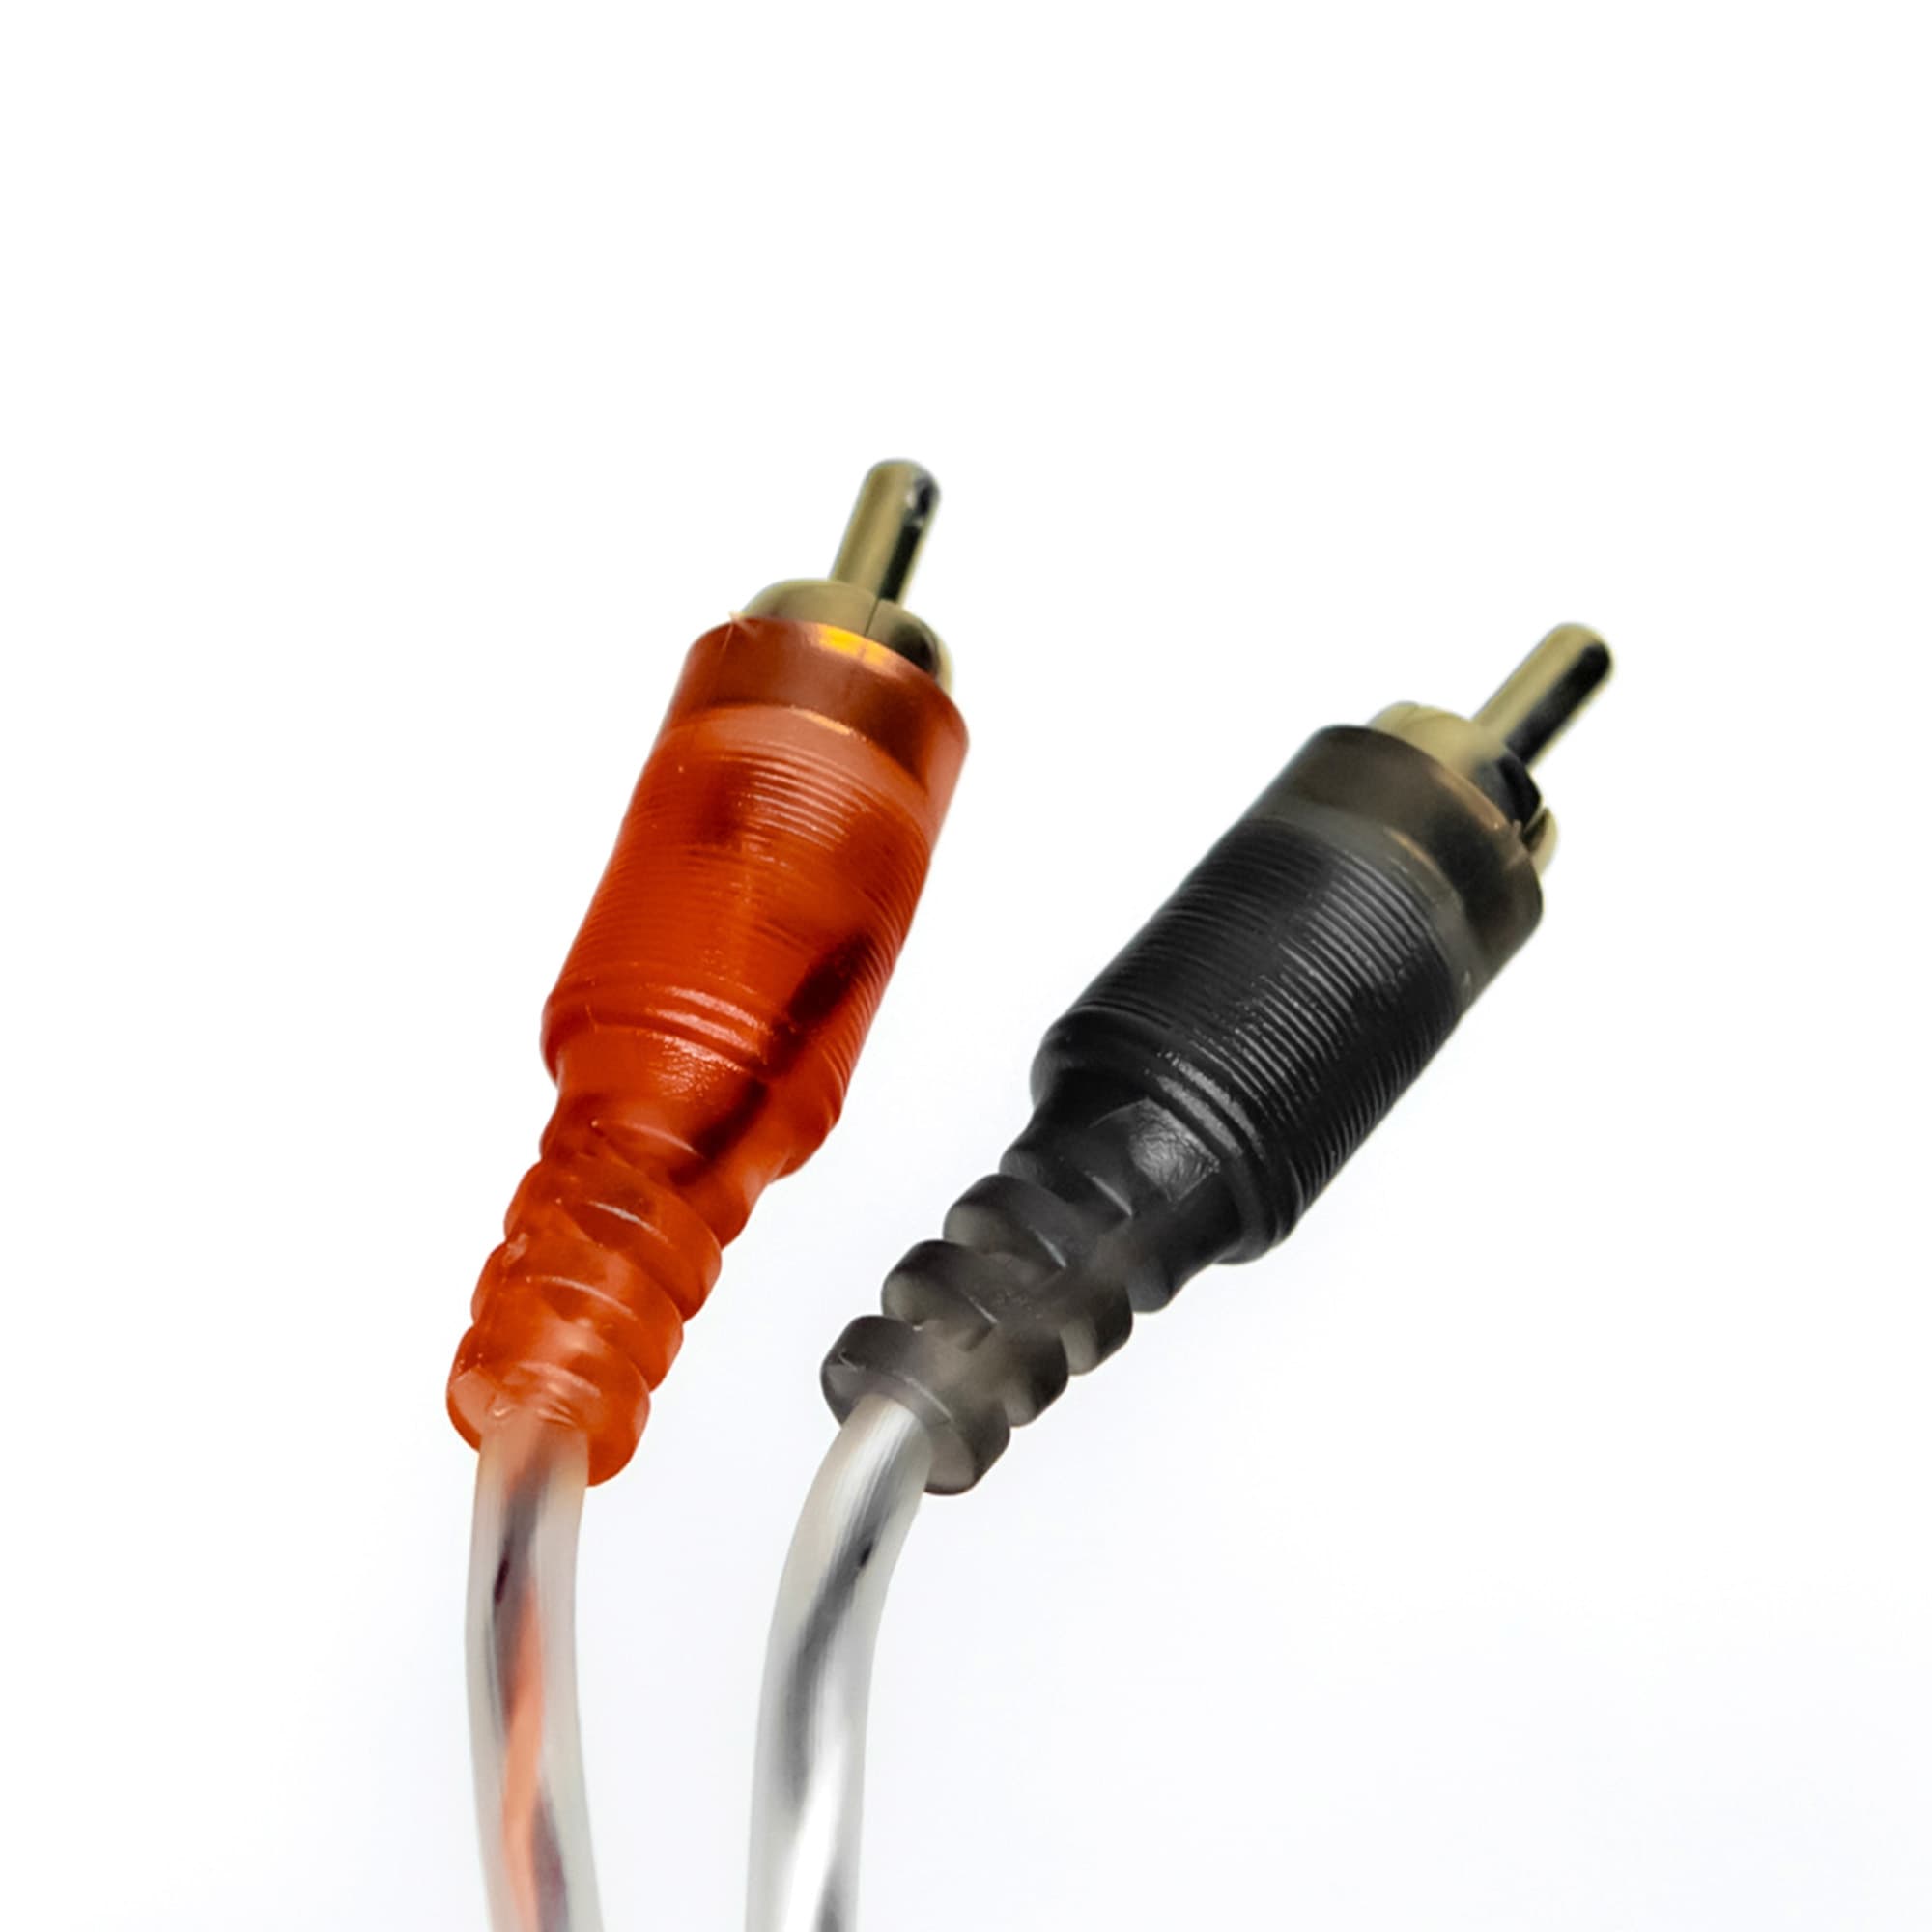 Провод соединительный AMP MRCA-3 Межблочный кабель-медь (3м) купить в интернет магазине AMPGROUP.  Провод соединительный AMP MRCA-3 Межблочный кабель-медь (3м)   цены, большой каталог, новинки.
